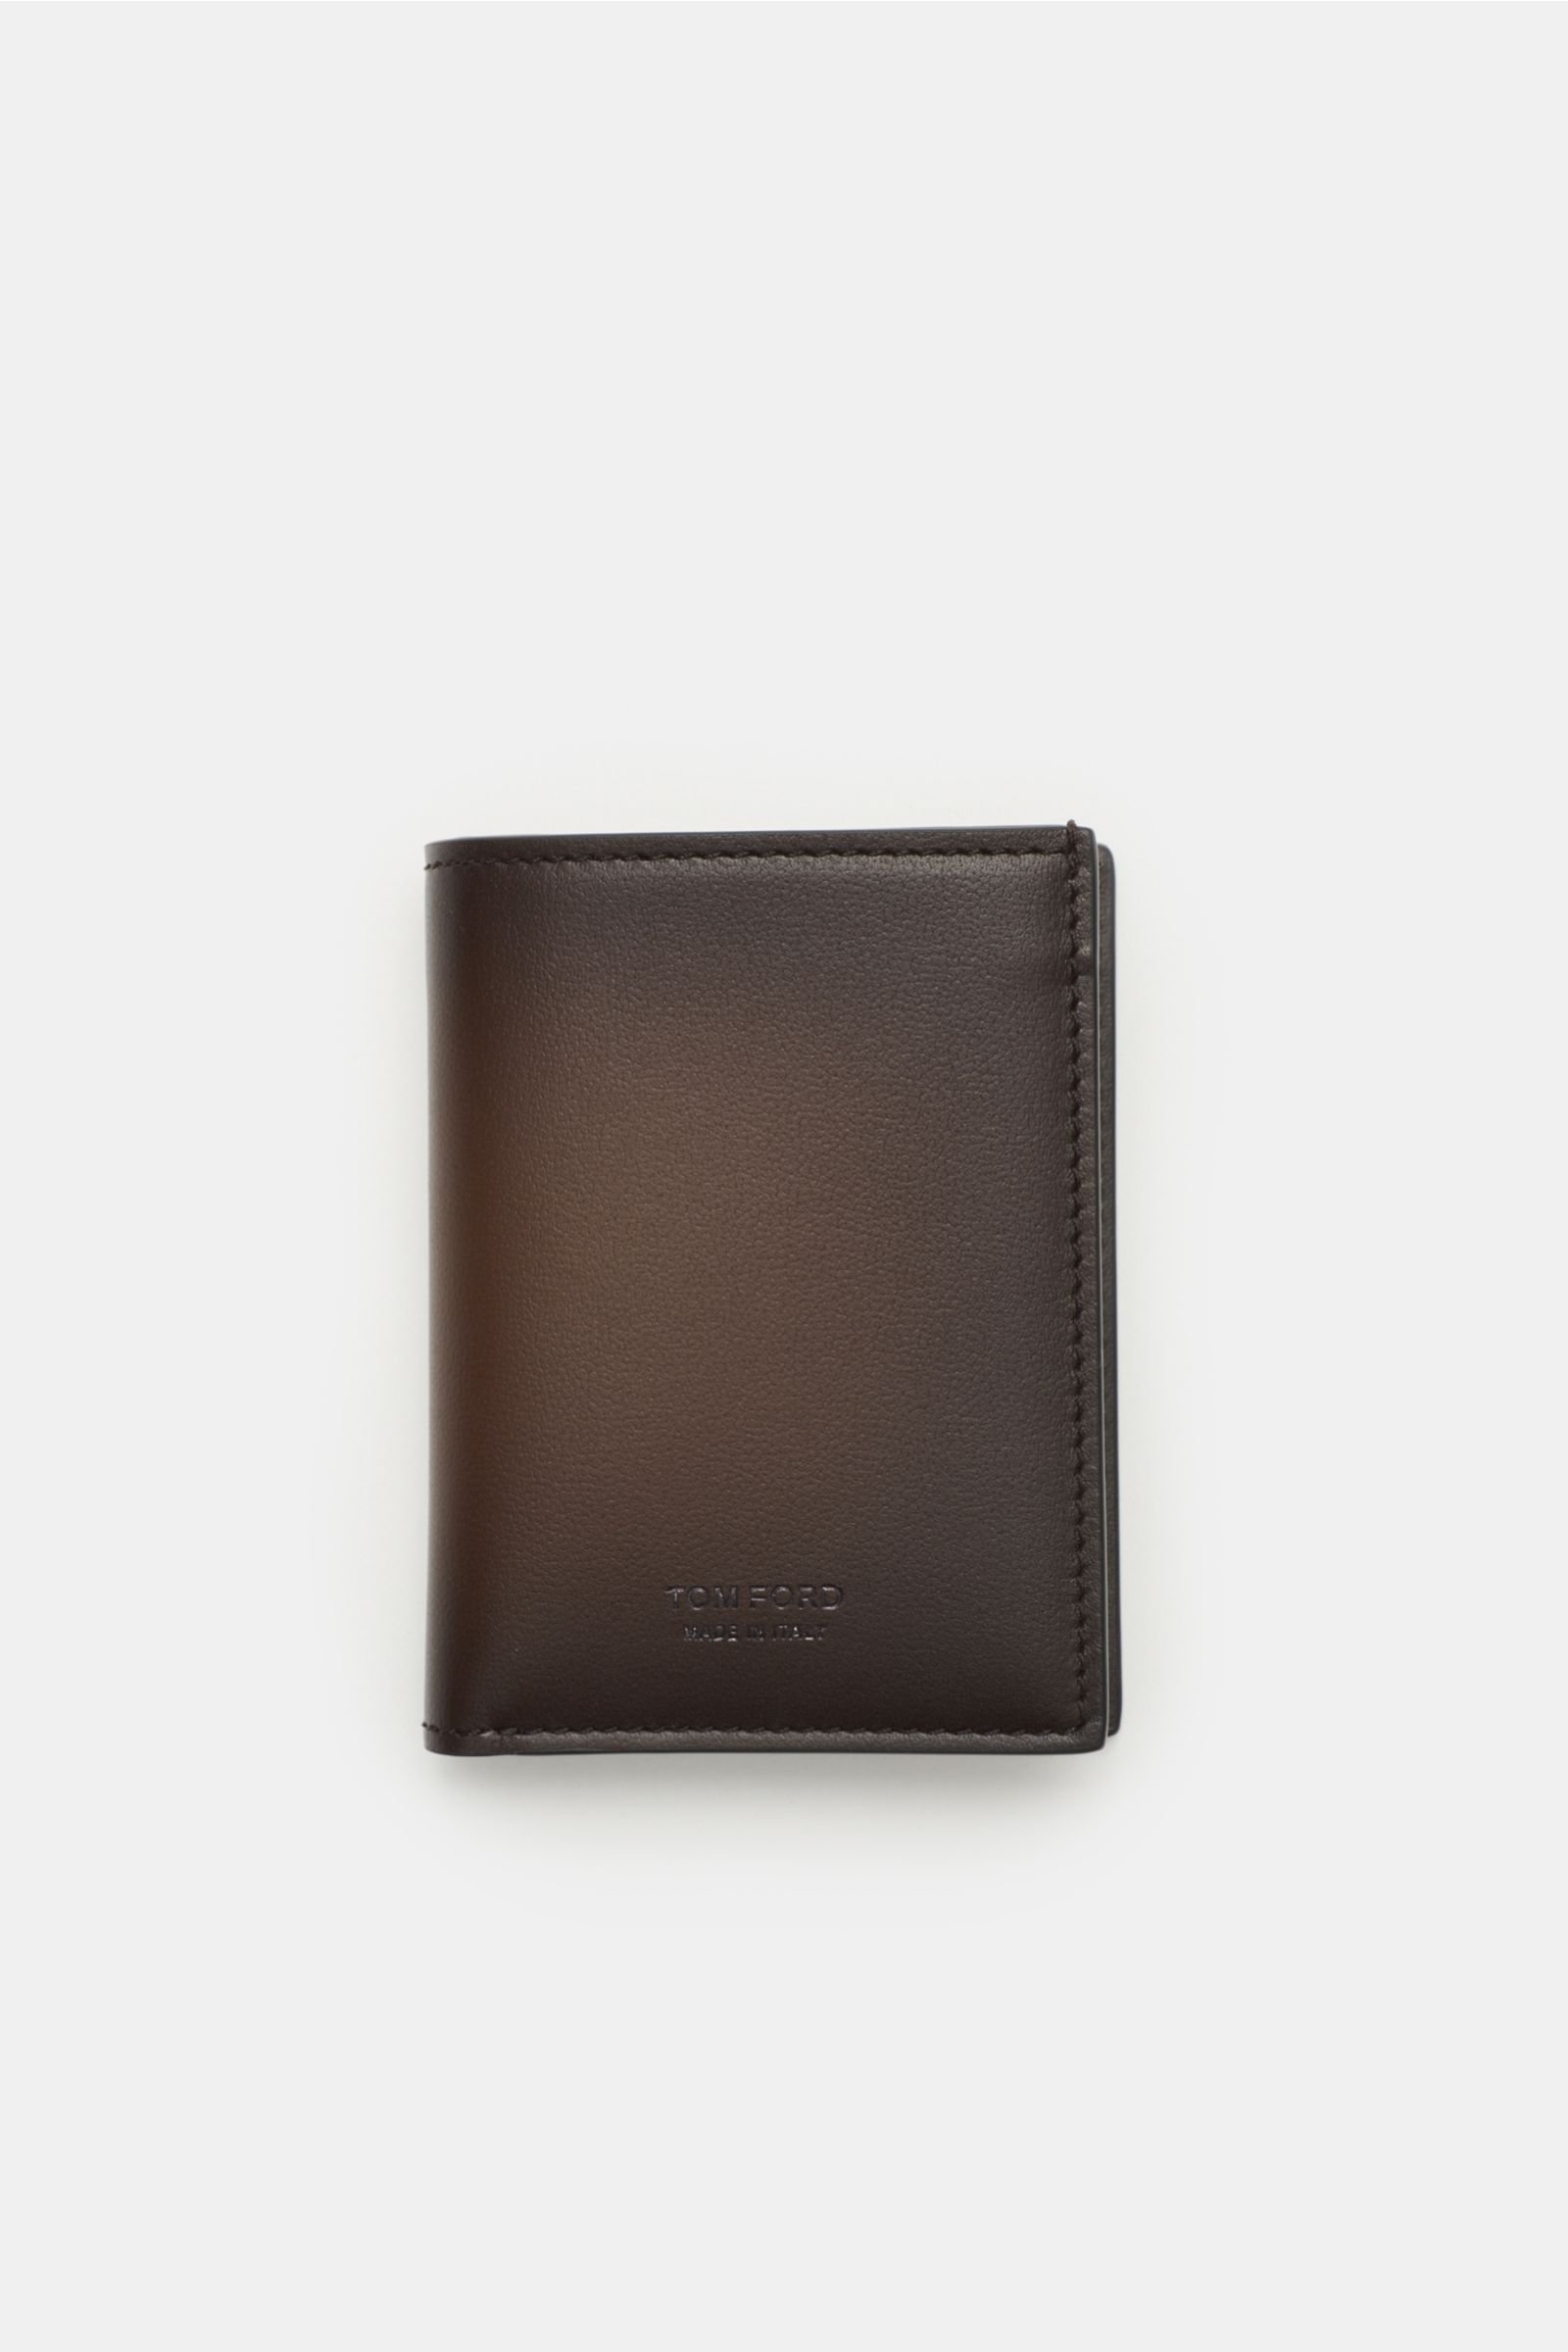 Credit card holder dark brown